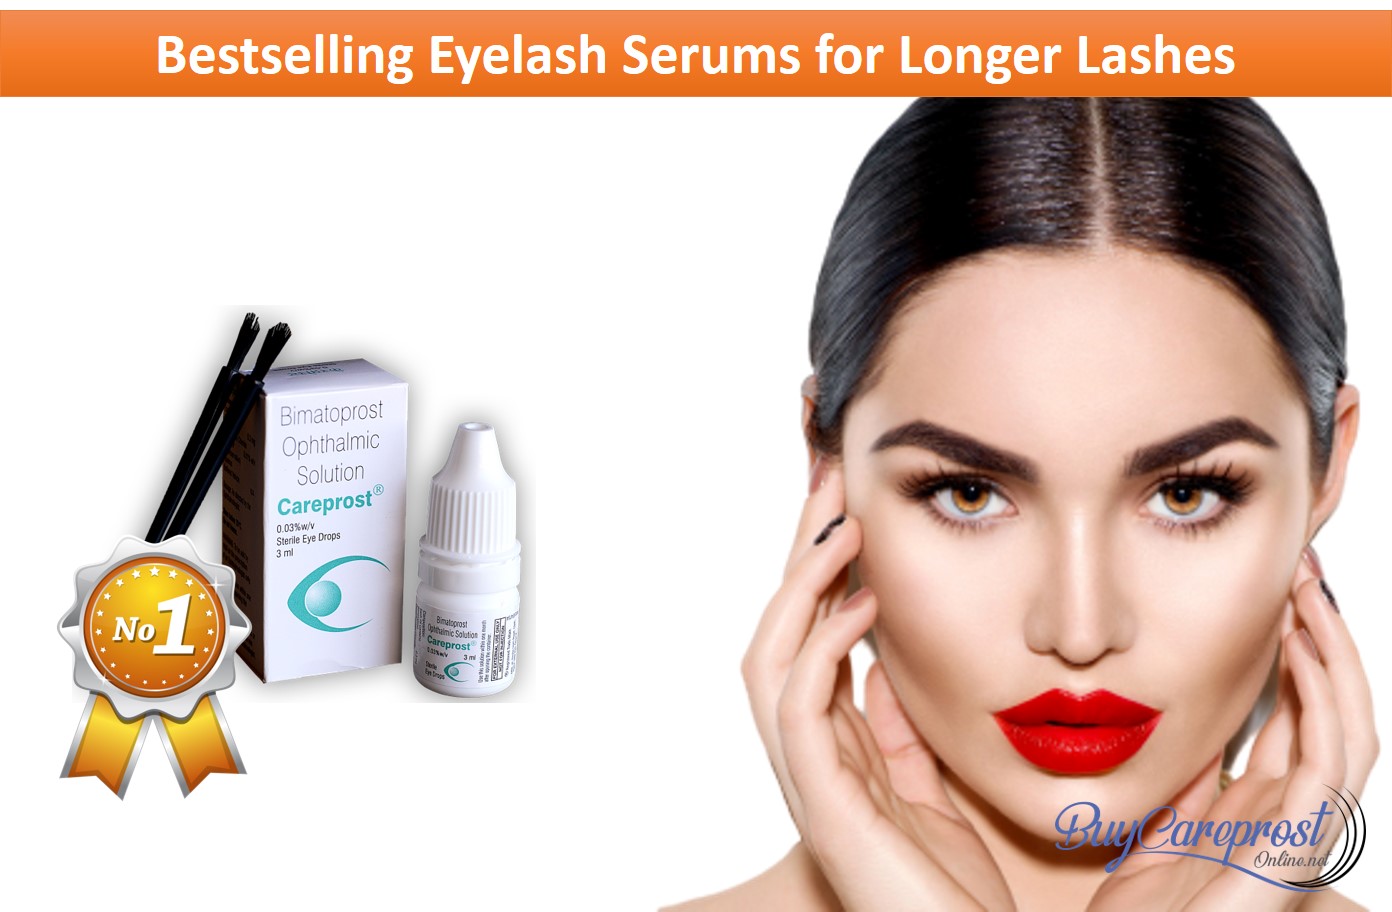 Bestselling Eyelash Serums for Longer Lashes